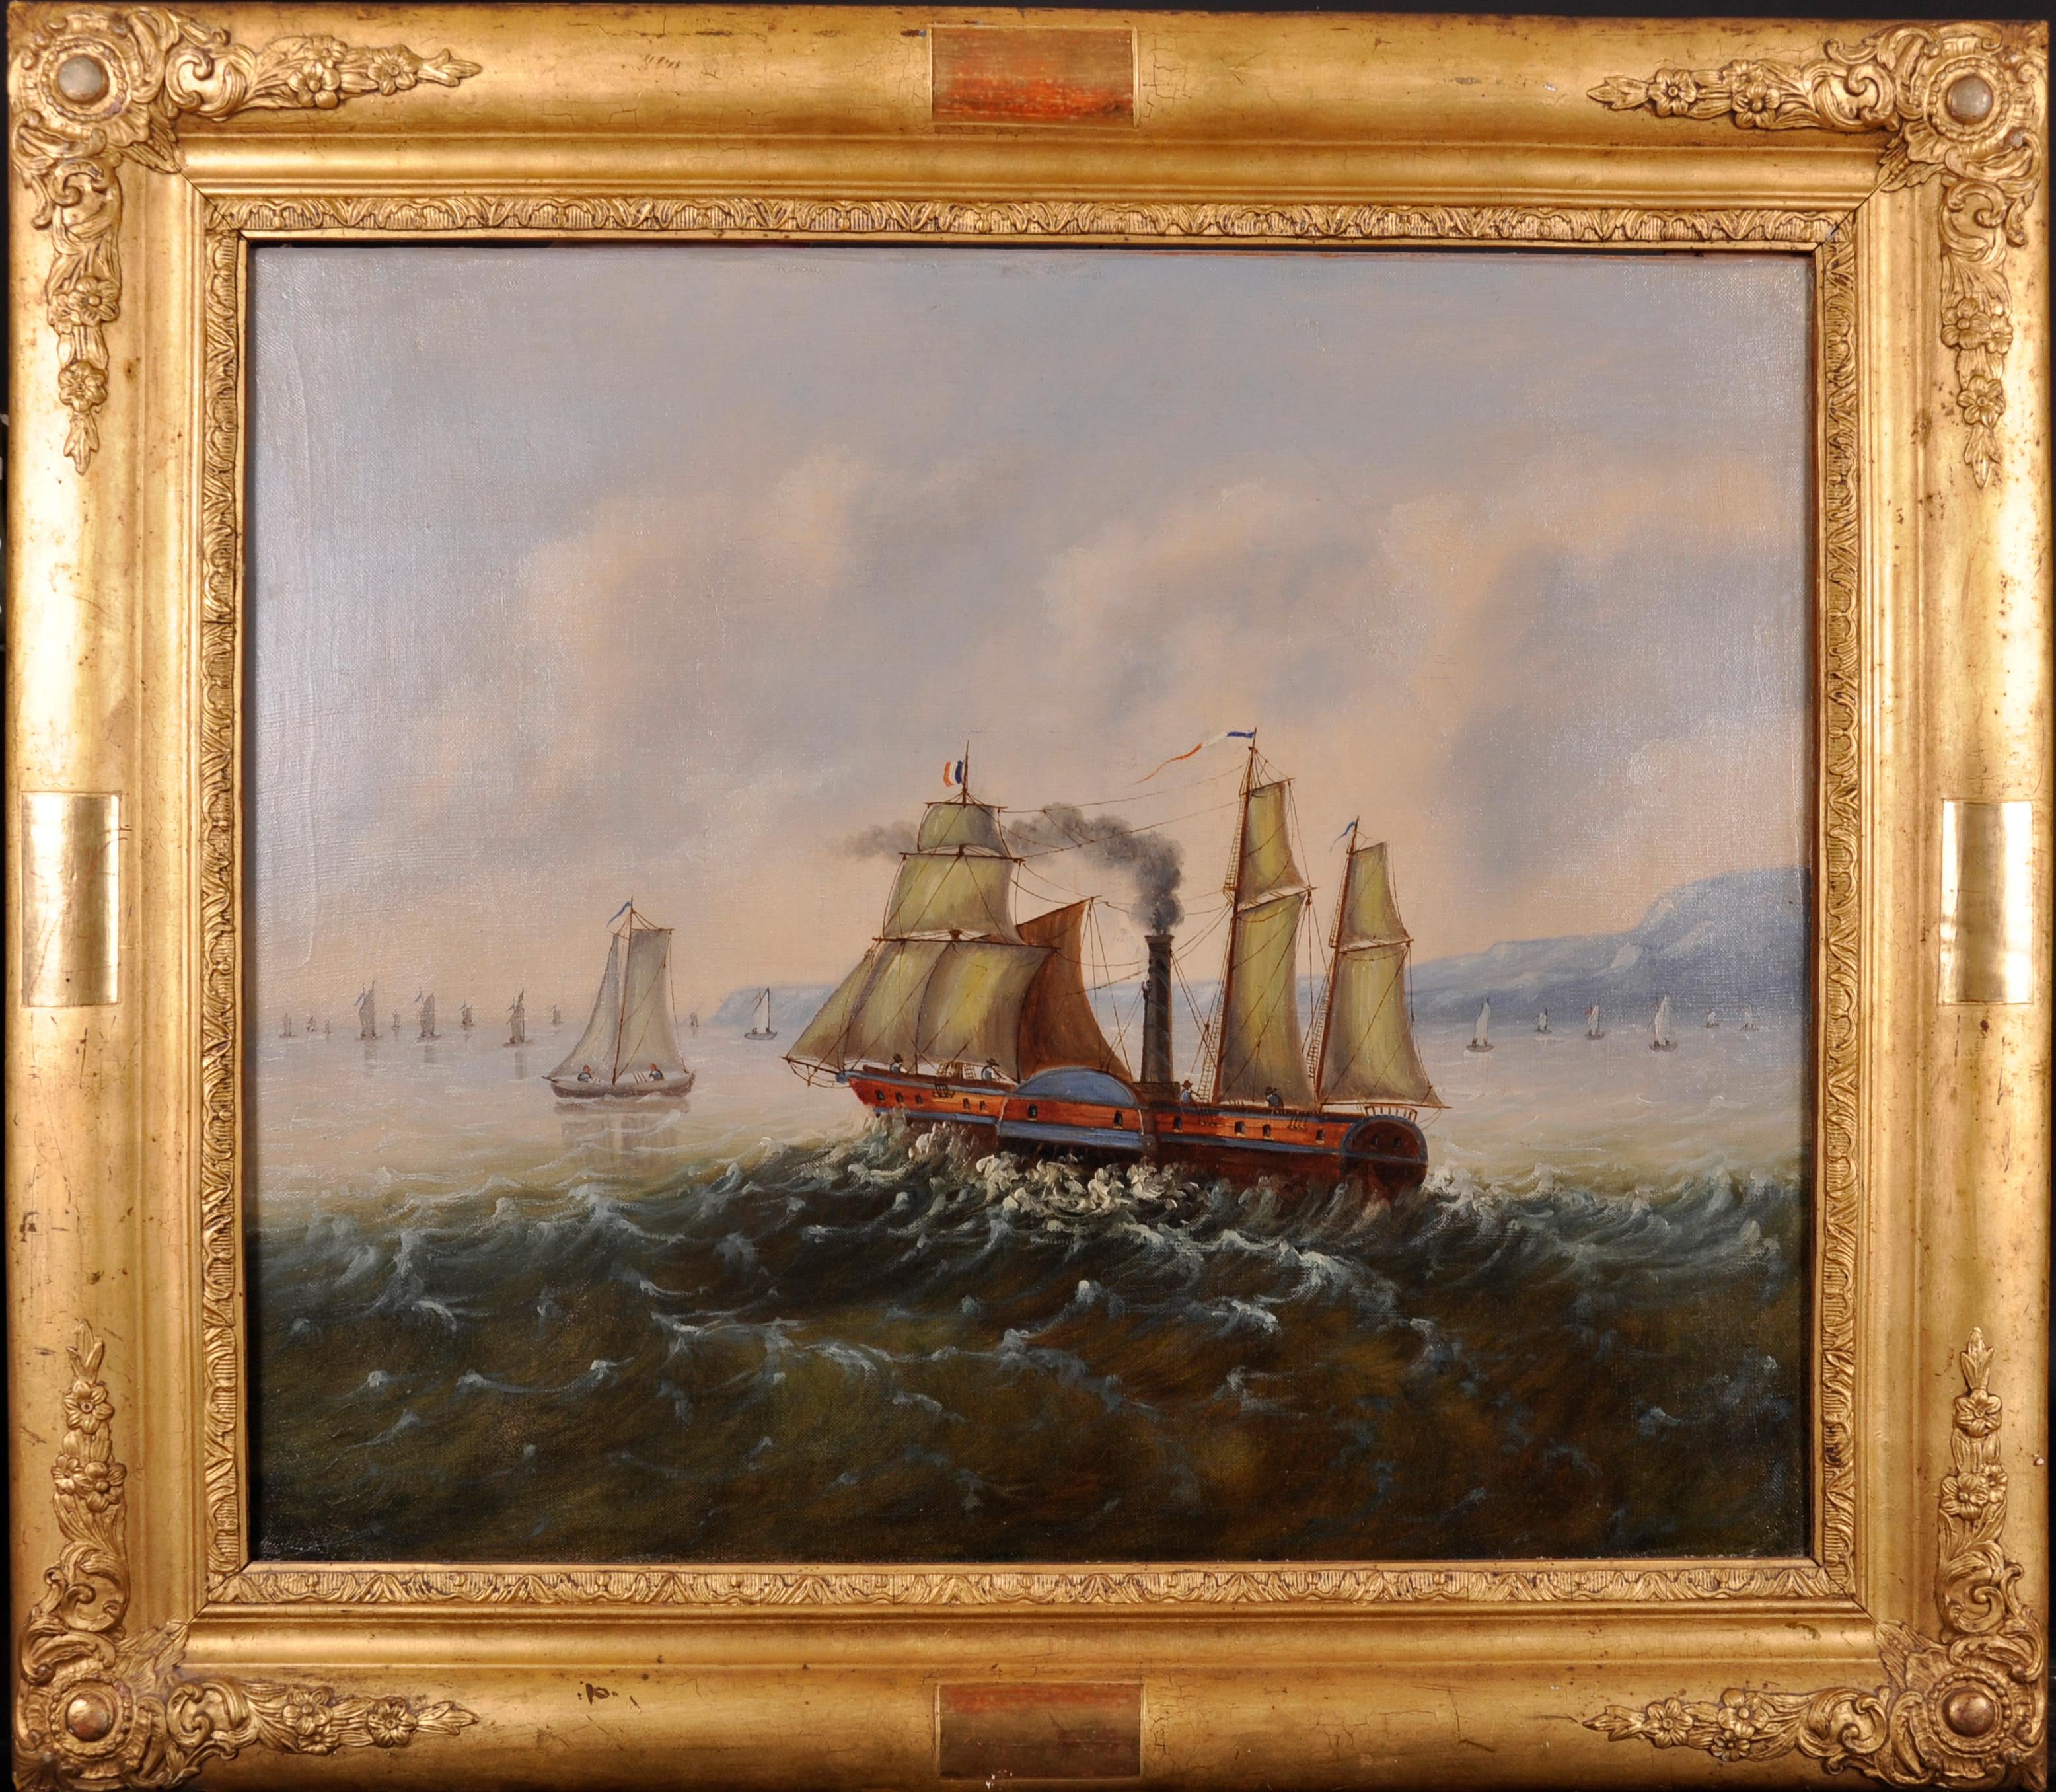 Landscape Painting French Artist - Peinture à l'huile française du 19ème siècle - Voilier à vapeur à vapeur à vapeur coquillage